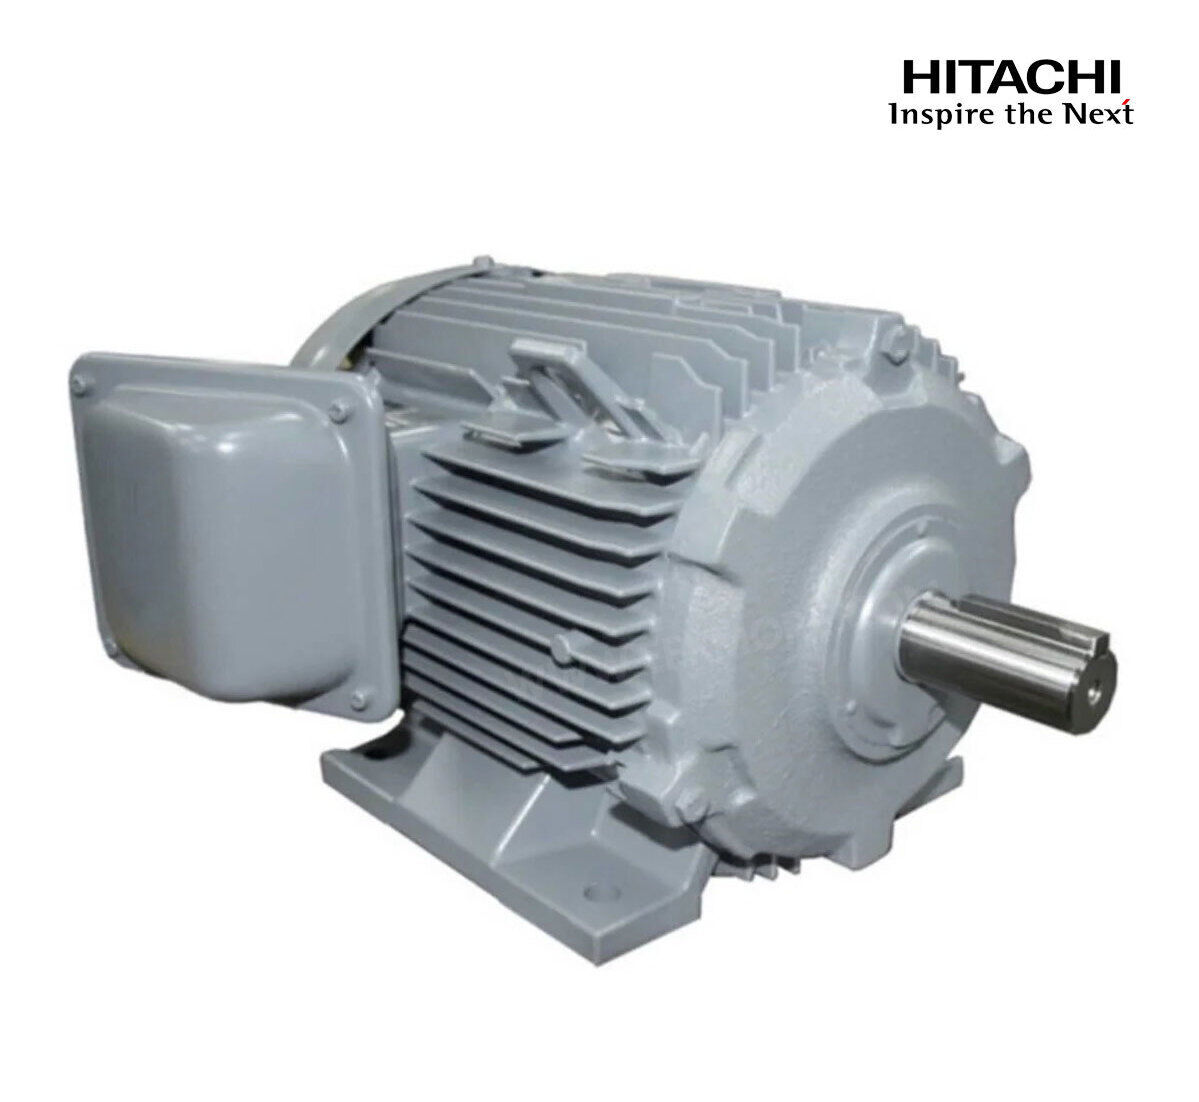 มอเตอร์ฮิตาชิของแท้ 100% HITACHI รุ่น TFO-KK กำลัง 7.5 แรงม้า (5.5 KW.) กำลังไฟฟ้าที่ใช้ 380V ความเร็วรอบตัวเปล่า 1450 RPM แกนเพลามอเตอร์ 38 MM.รับประกัน 3 ปี มีของพร้อมจัดส่งทุกวัน